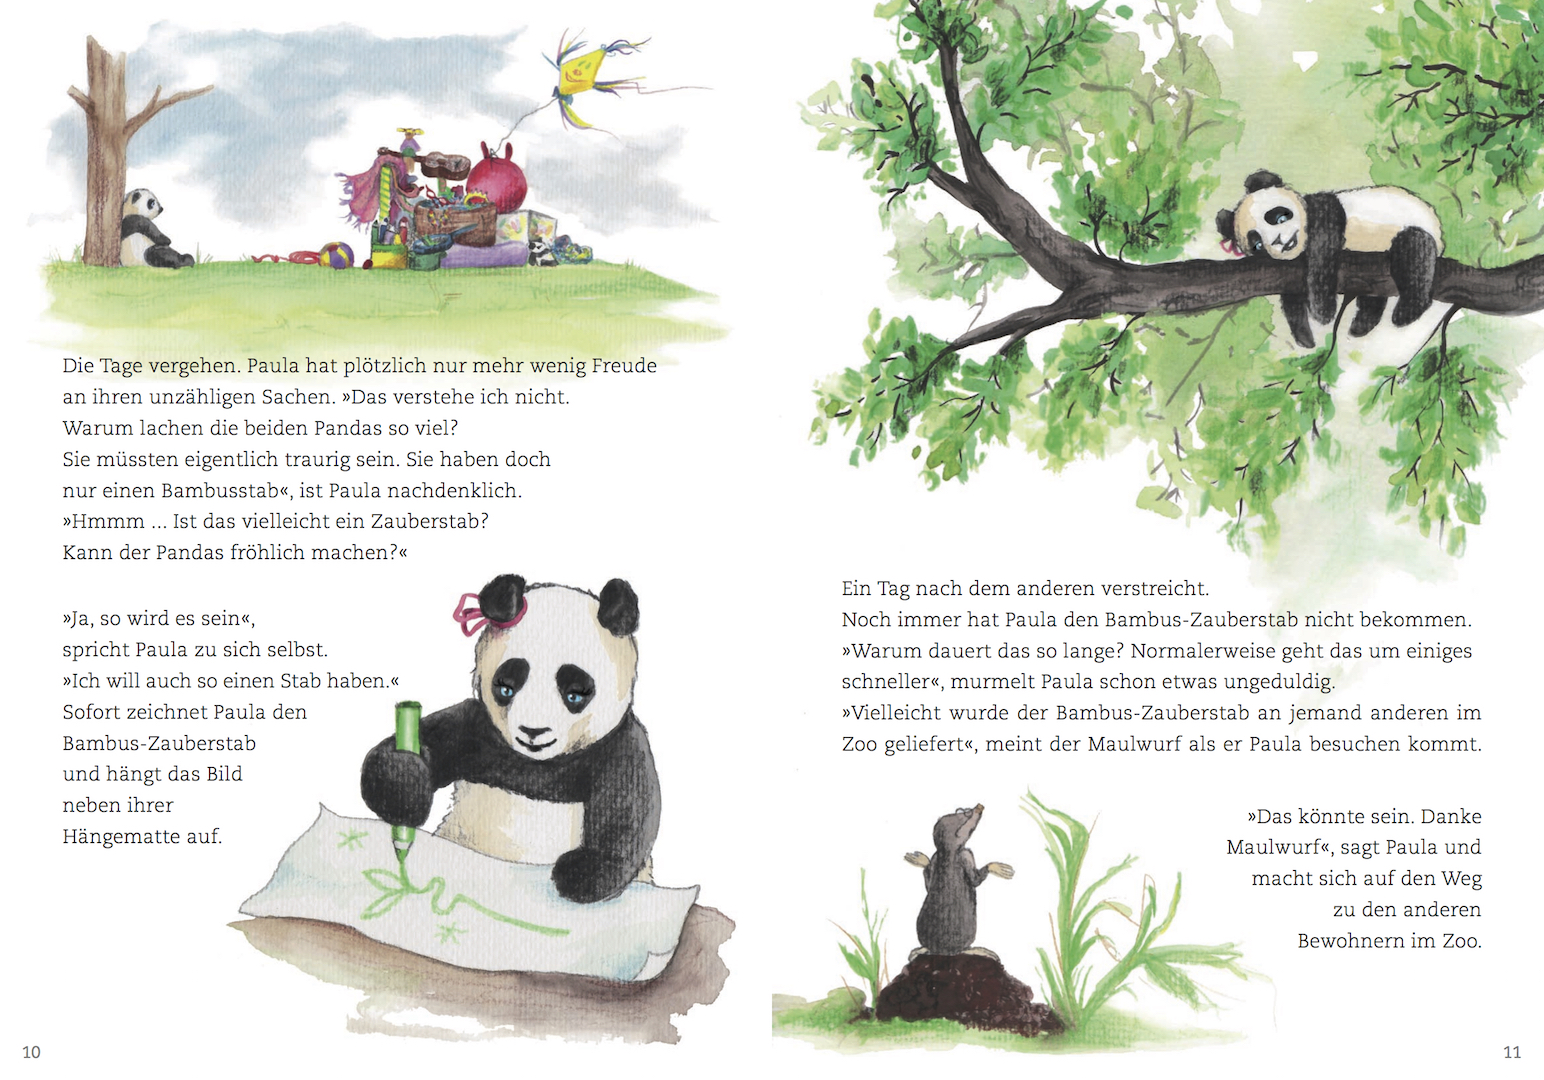 Paula Panda - Der Bambus-Zauberstab - Seite 10 & 11 - ©PaulaPanda.org